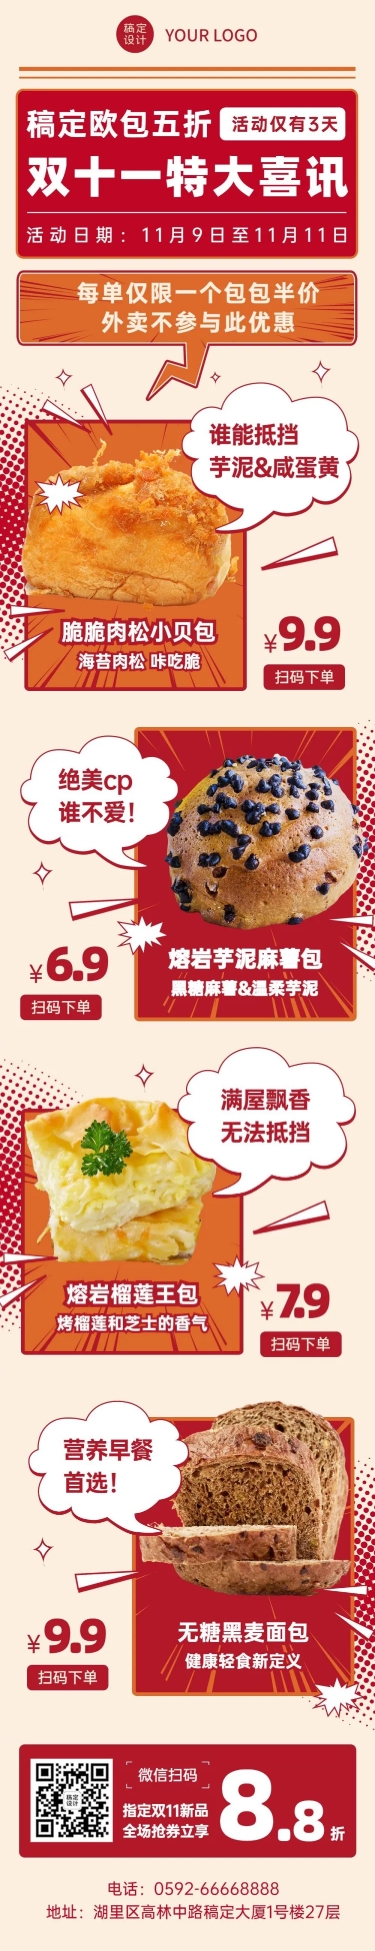 双十一烘焙甜点产品营销喜庆文章长图预览效果